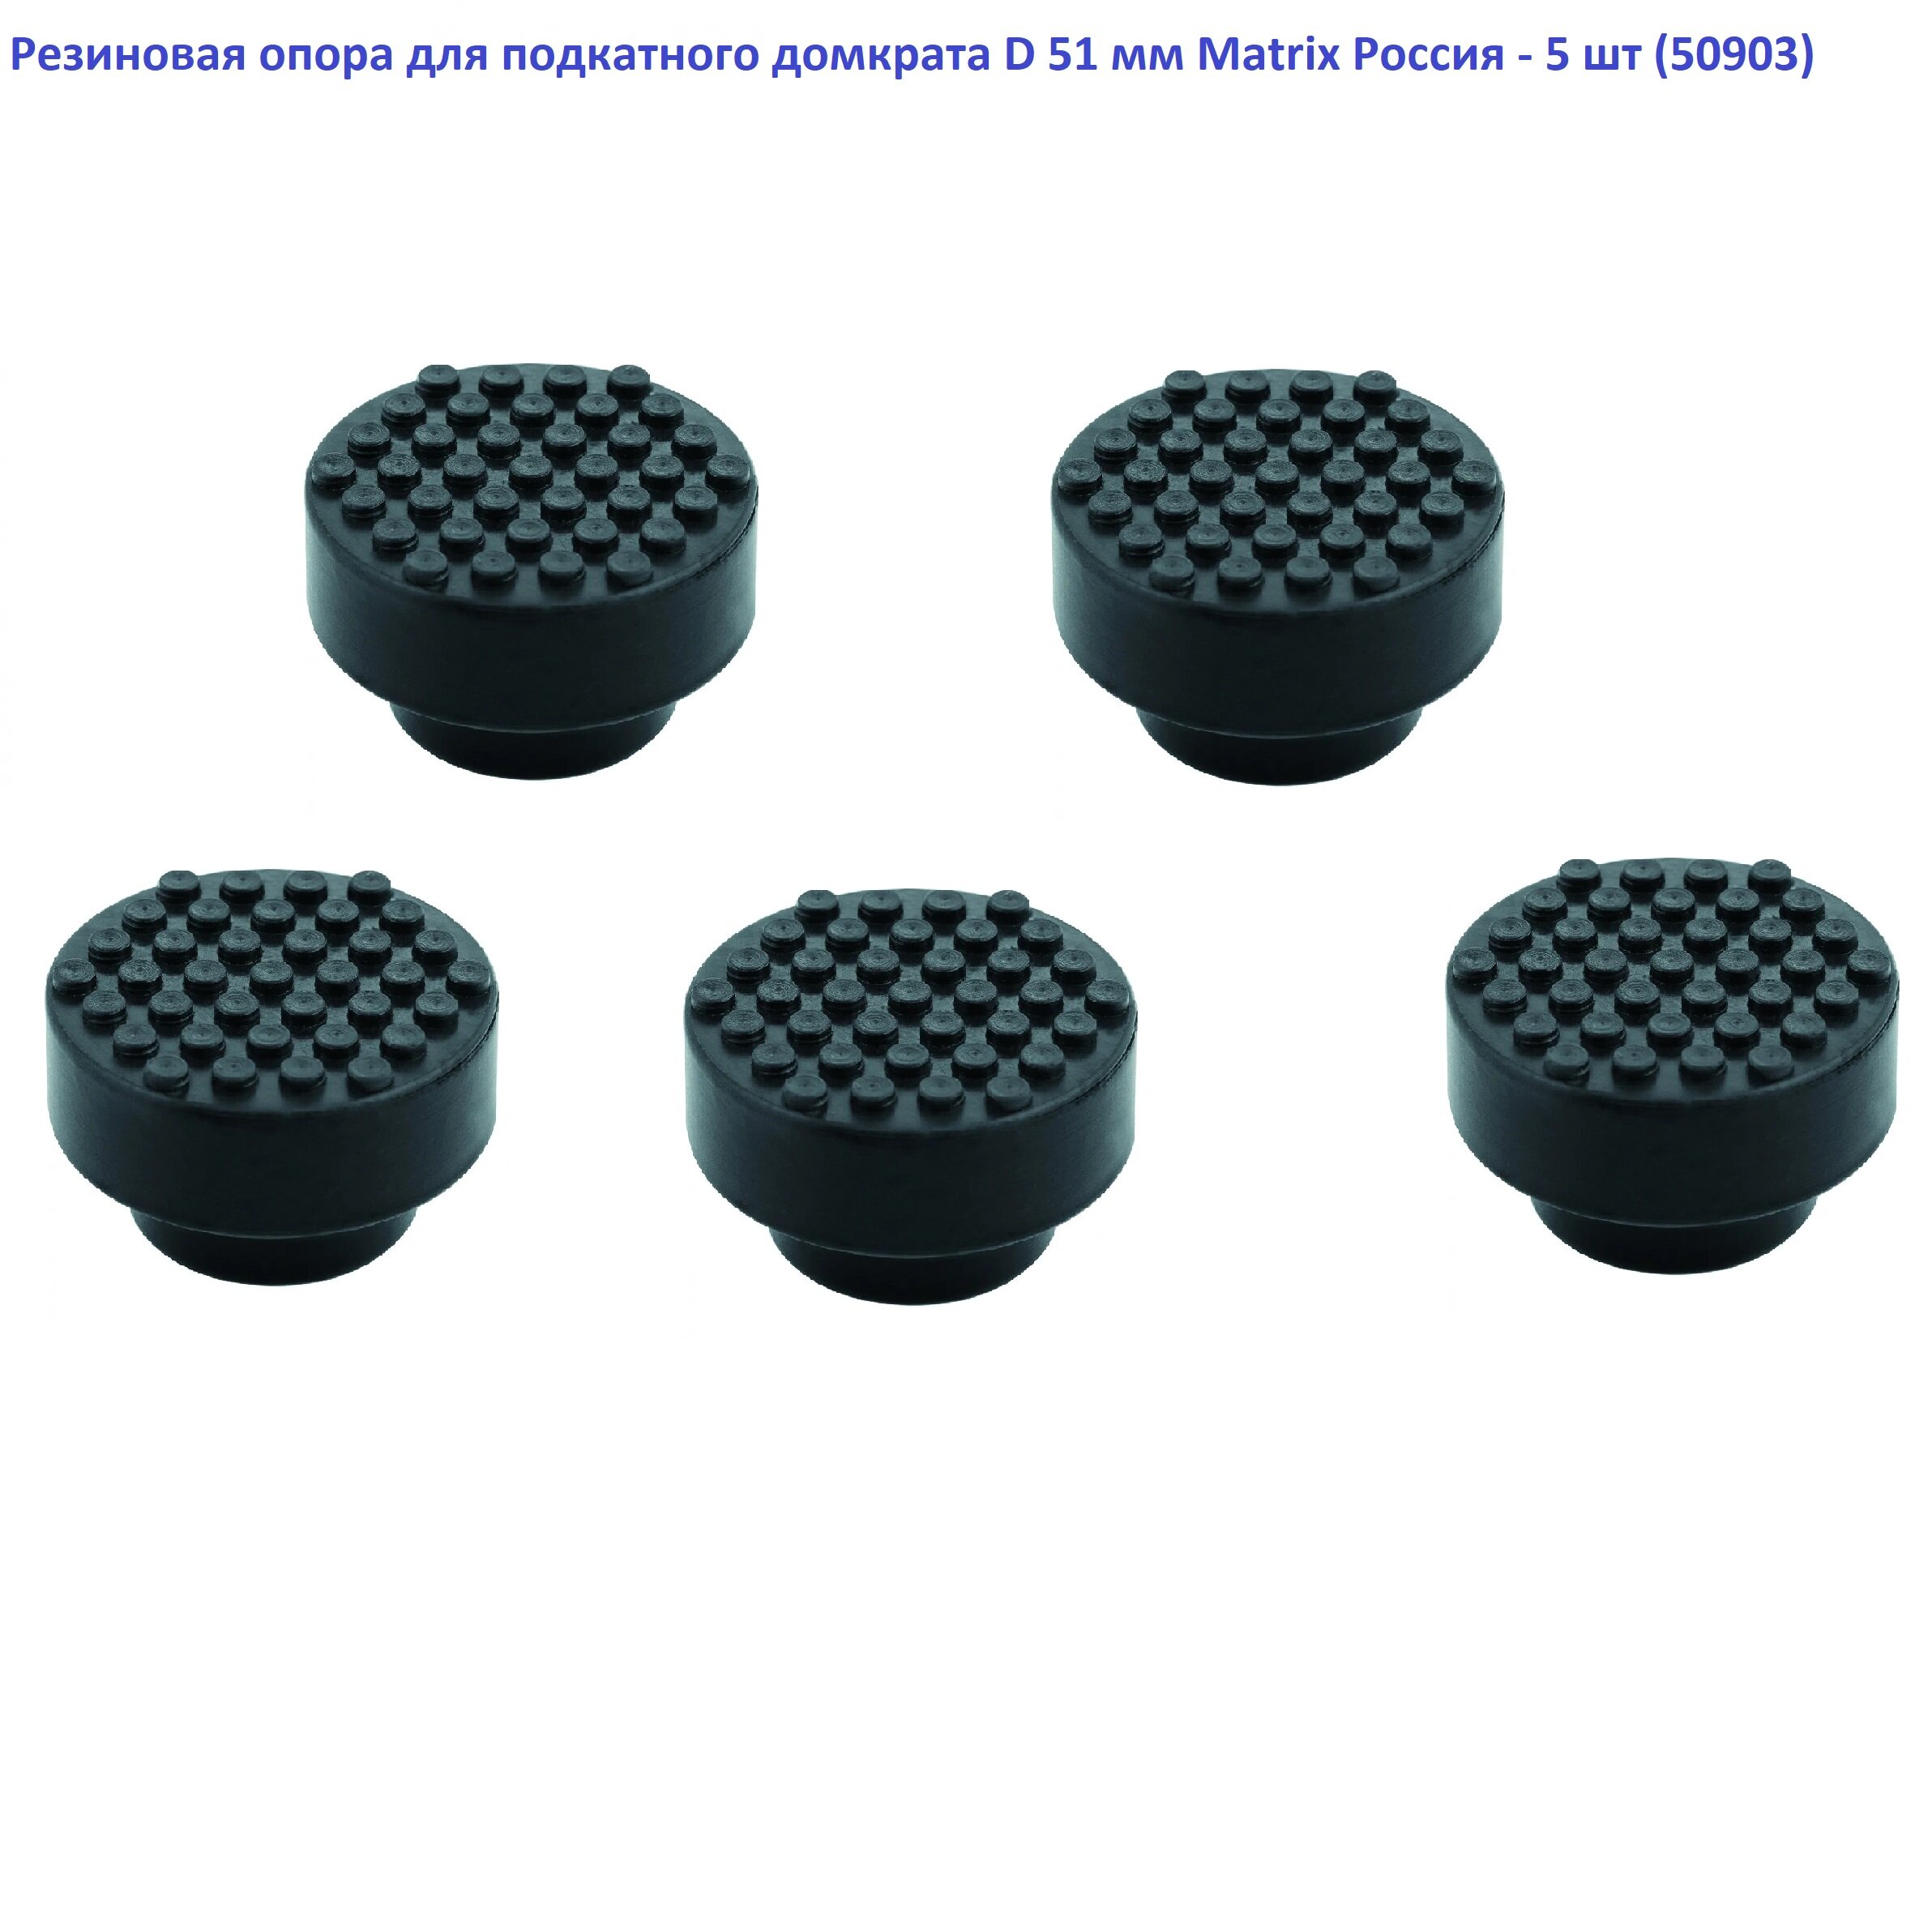 Накладка Matrix 50903 черный для домкратов 51127, 51131, 51132, 51134, 51152 - 5 шт